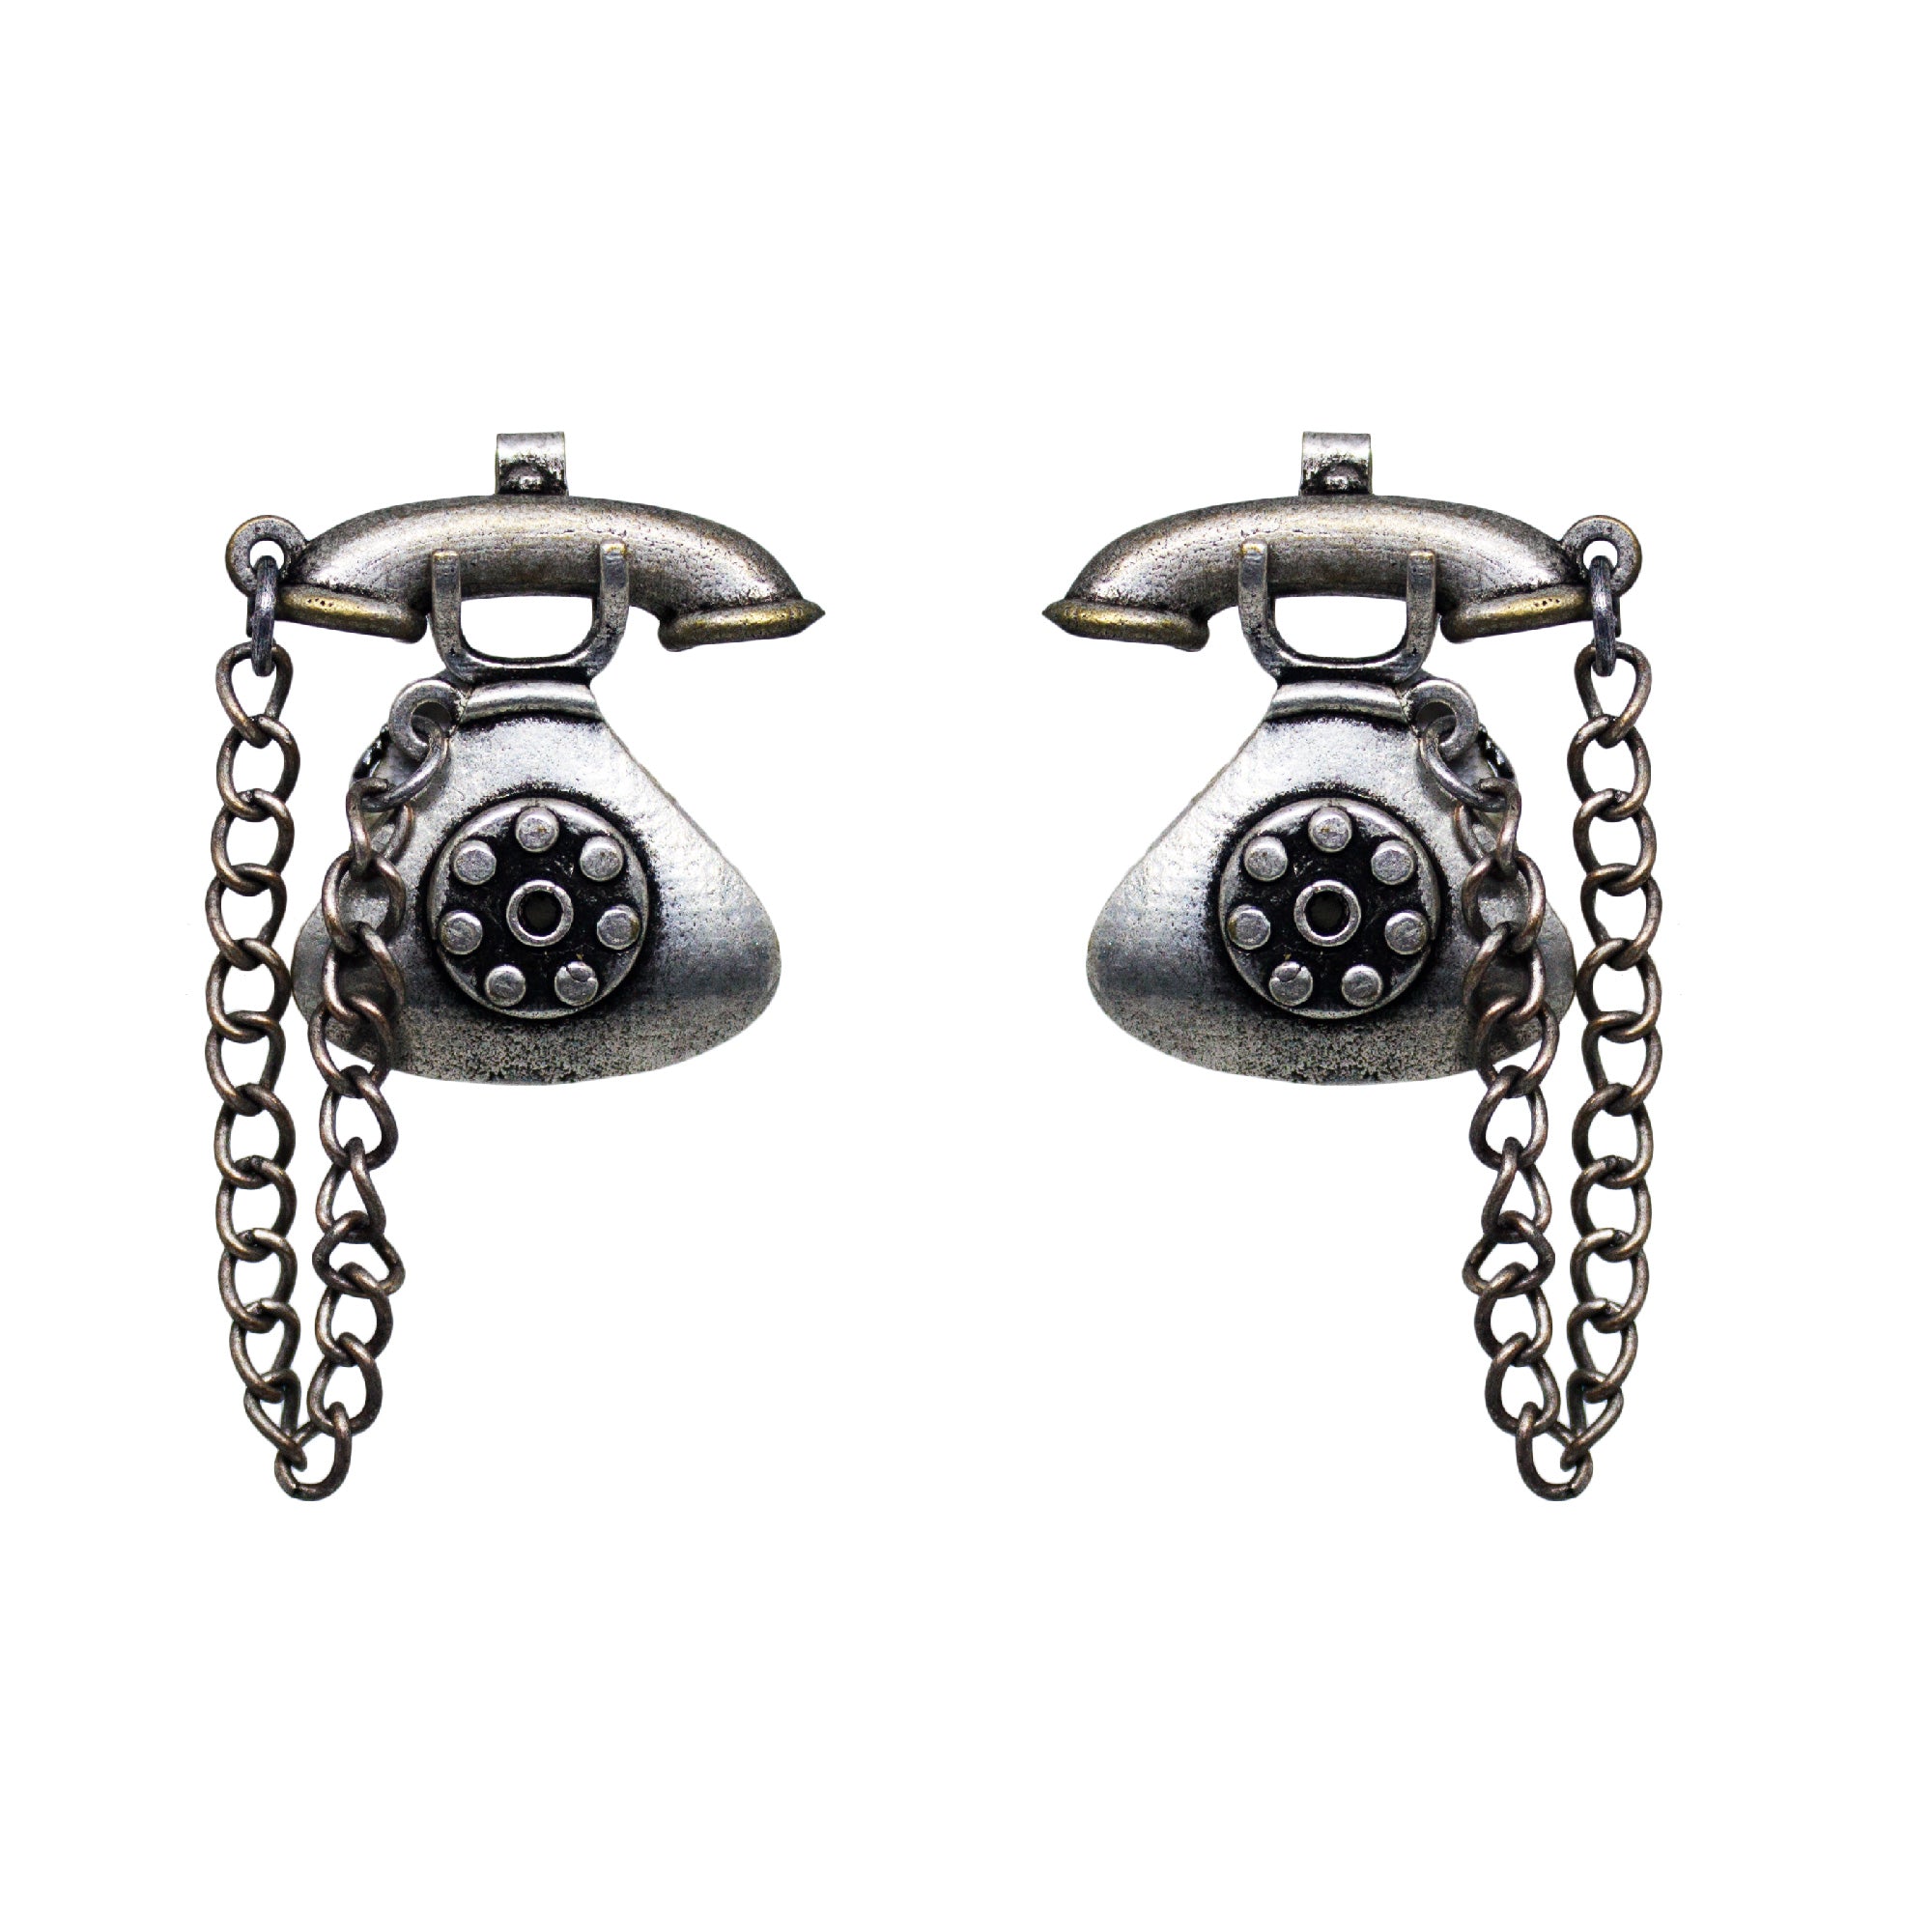 Abhinn Silver Replica Antique Telephone Design Earrings For Women